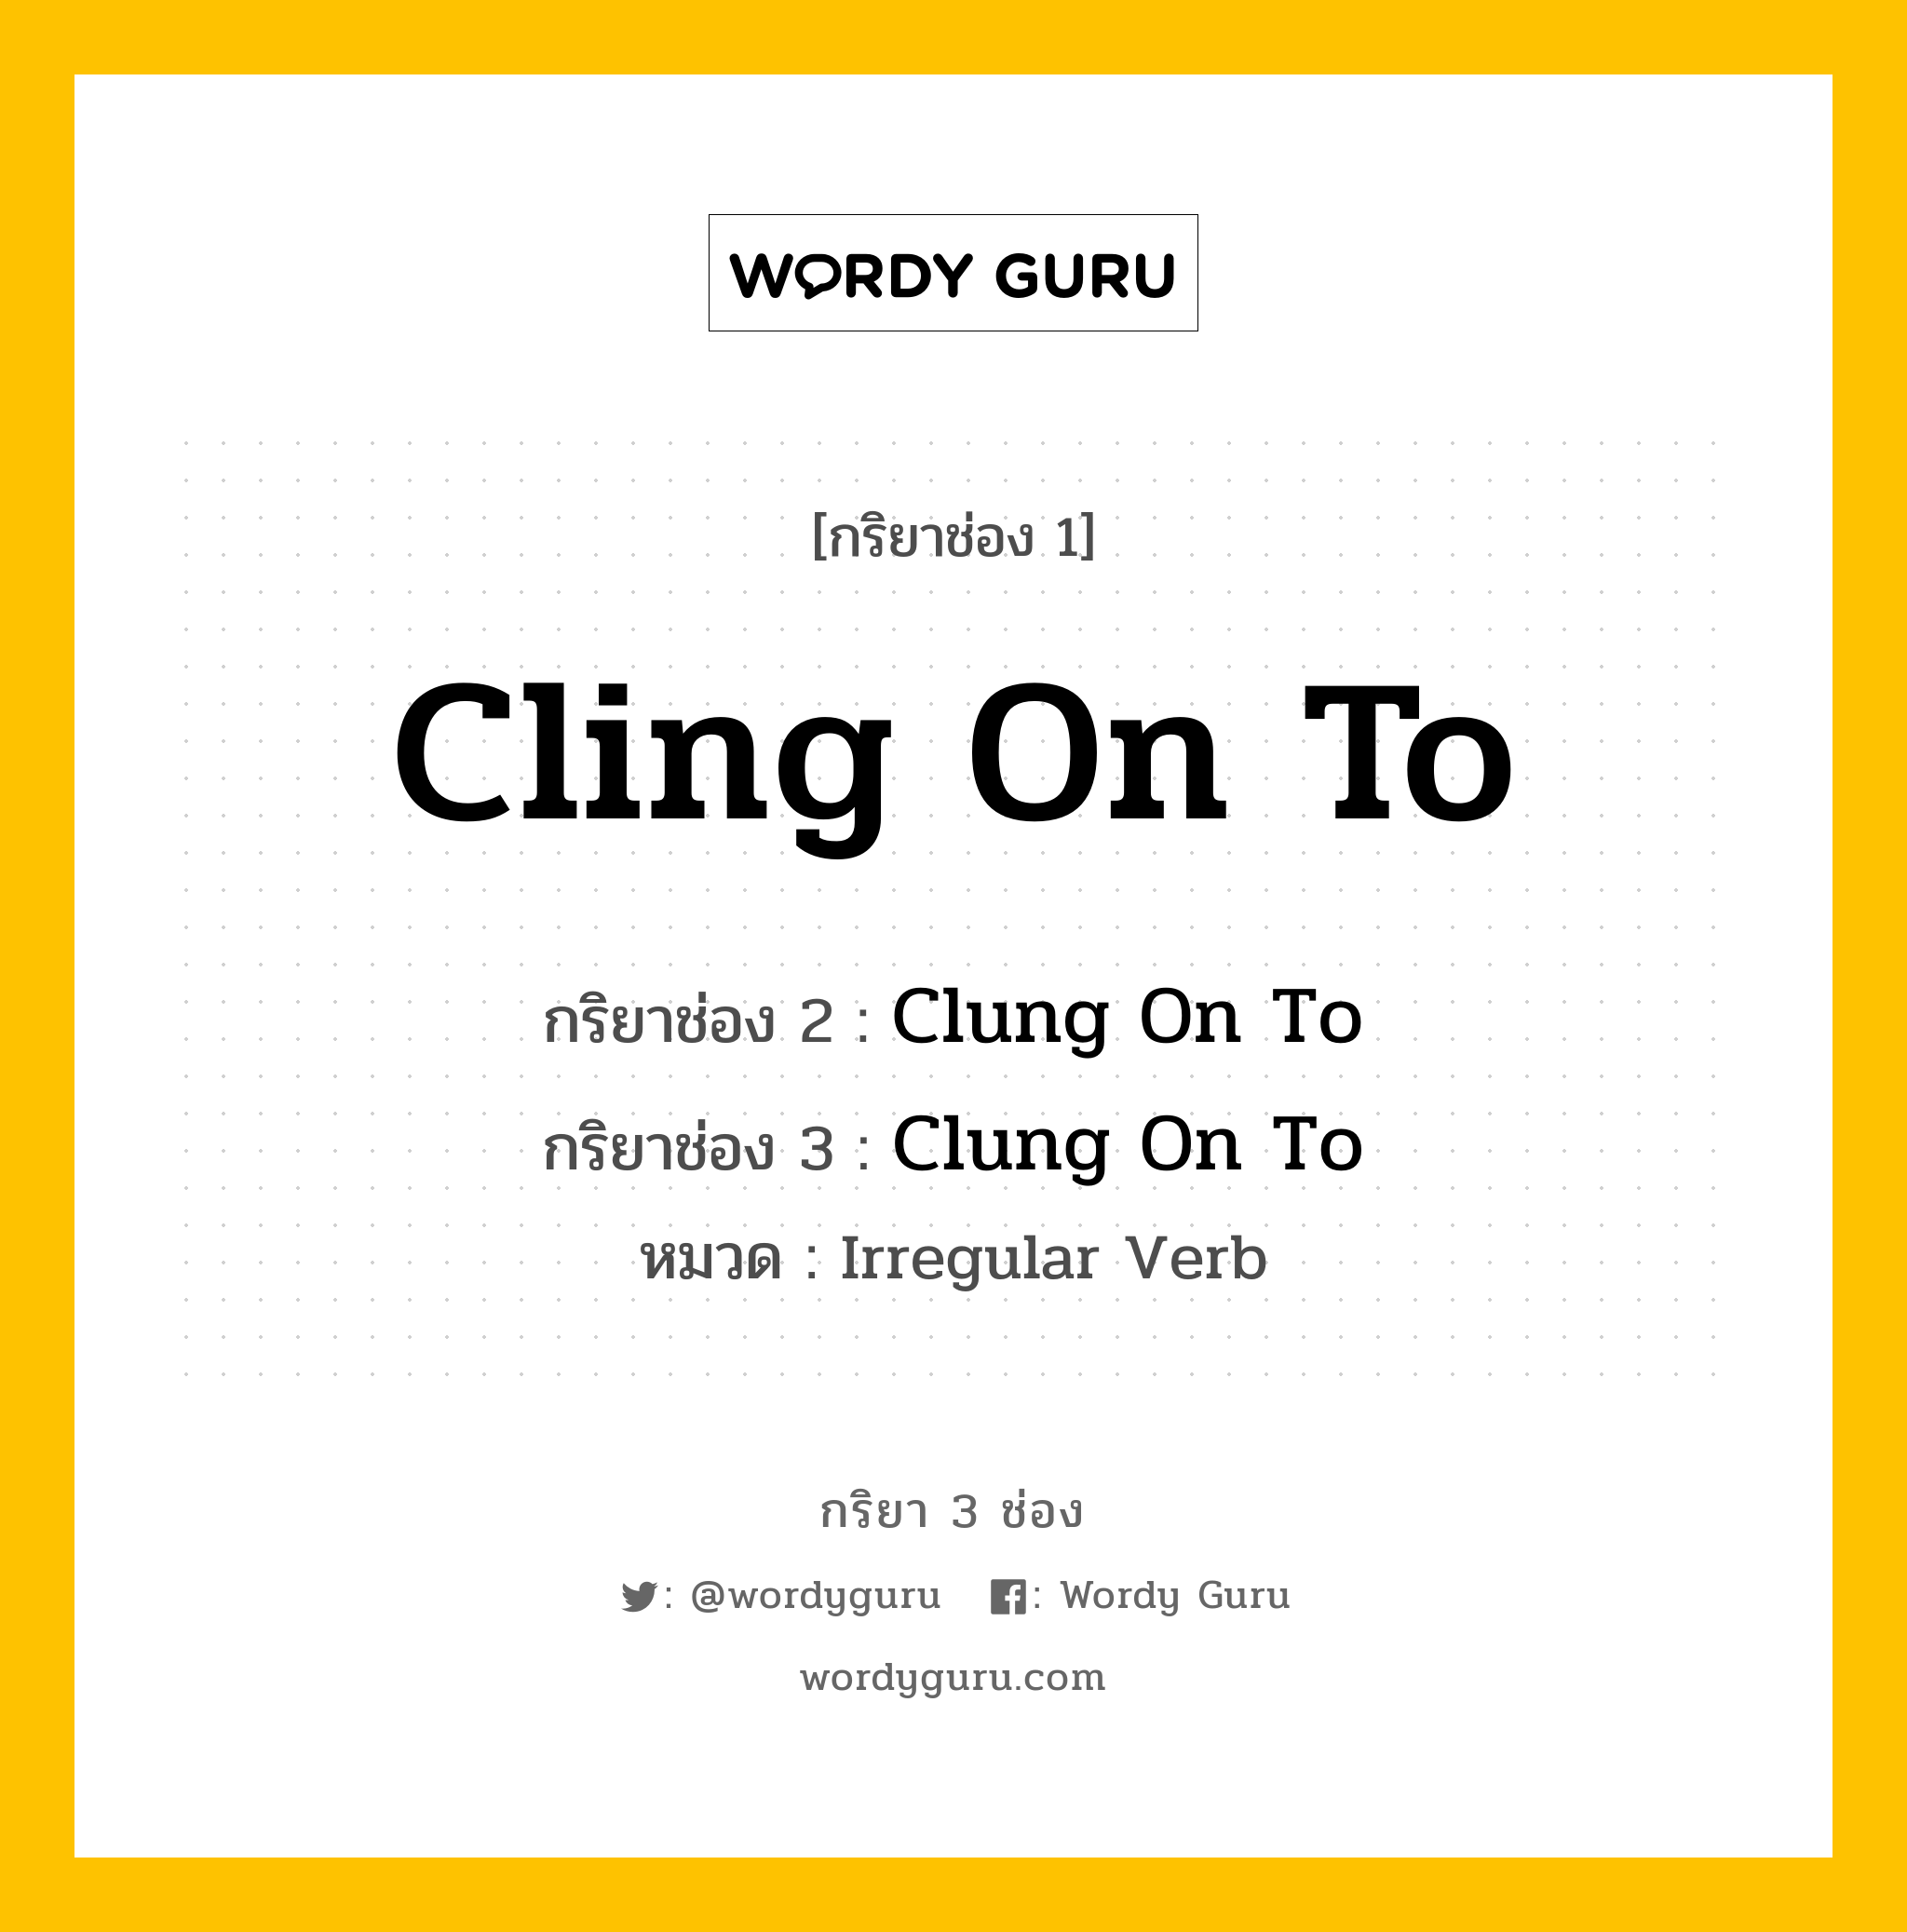 กริยา 3 ช่อง: Cling On To ช่อง 2 Cling On To ช่อง 3 คืออะไร, กริยาช่อง 1 Cling On To กริยาช่อง 2 Clung On To กริยาช่อง 3 Clung On To หมวด Irregular Verb หมวด Irregular Verb